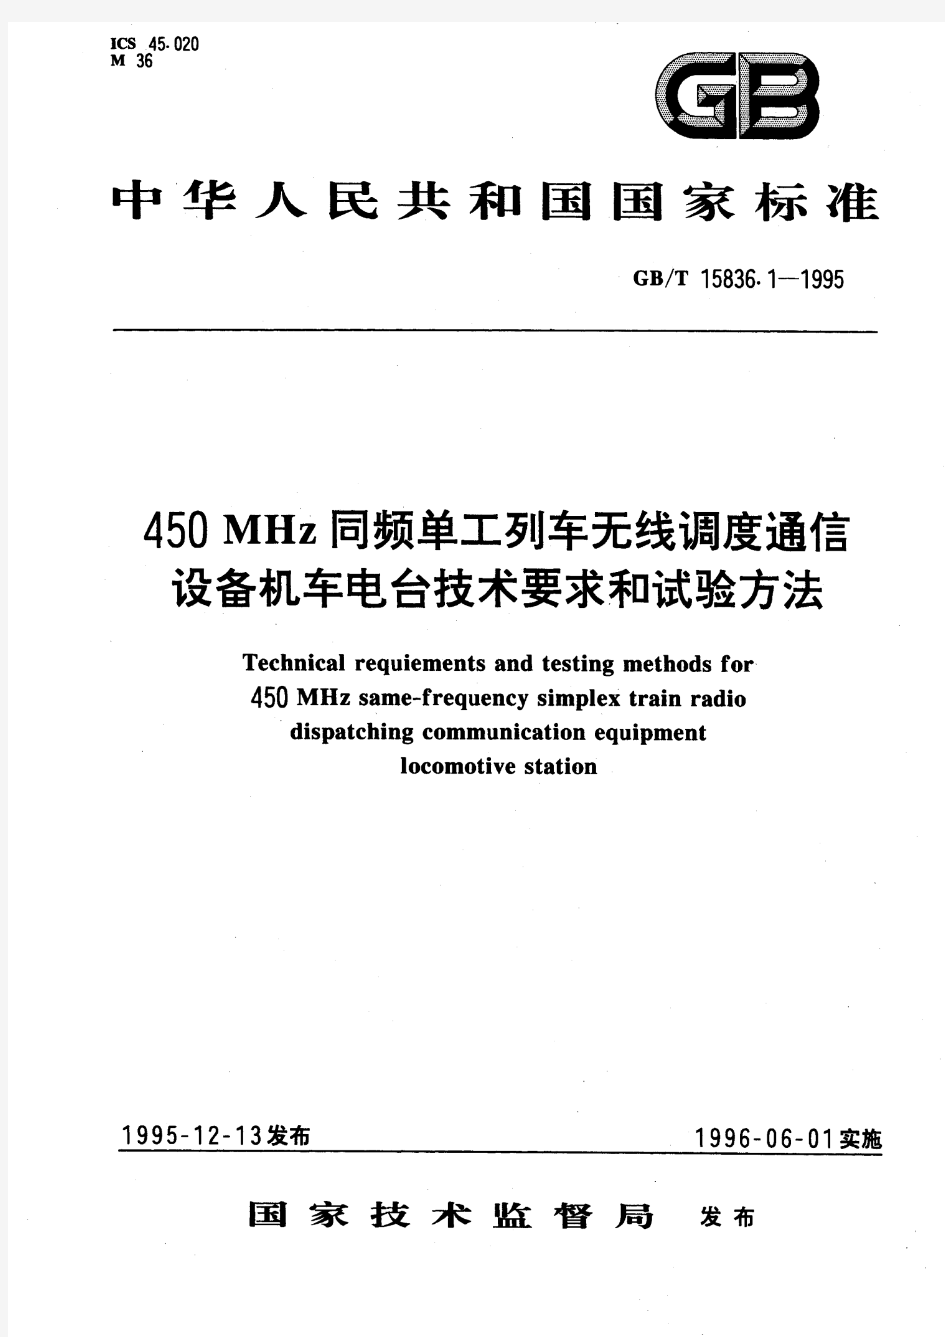 450MHz同频单工列车无线调度通信设备机车电台技术要求和试验方法(